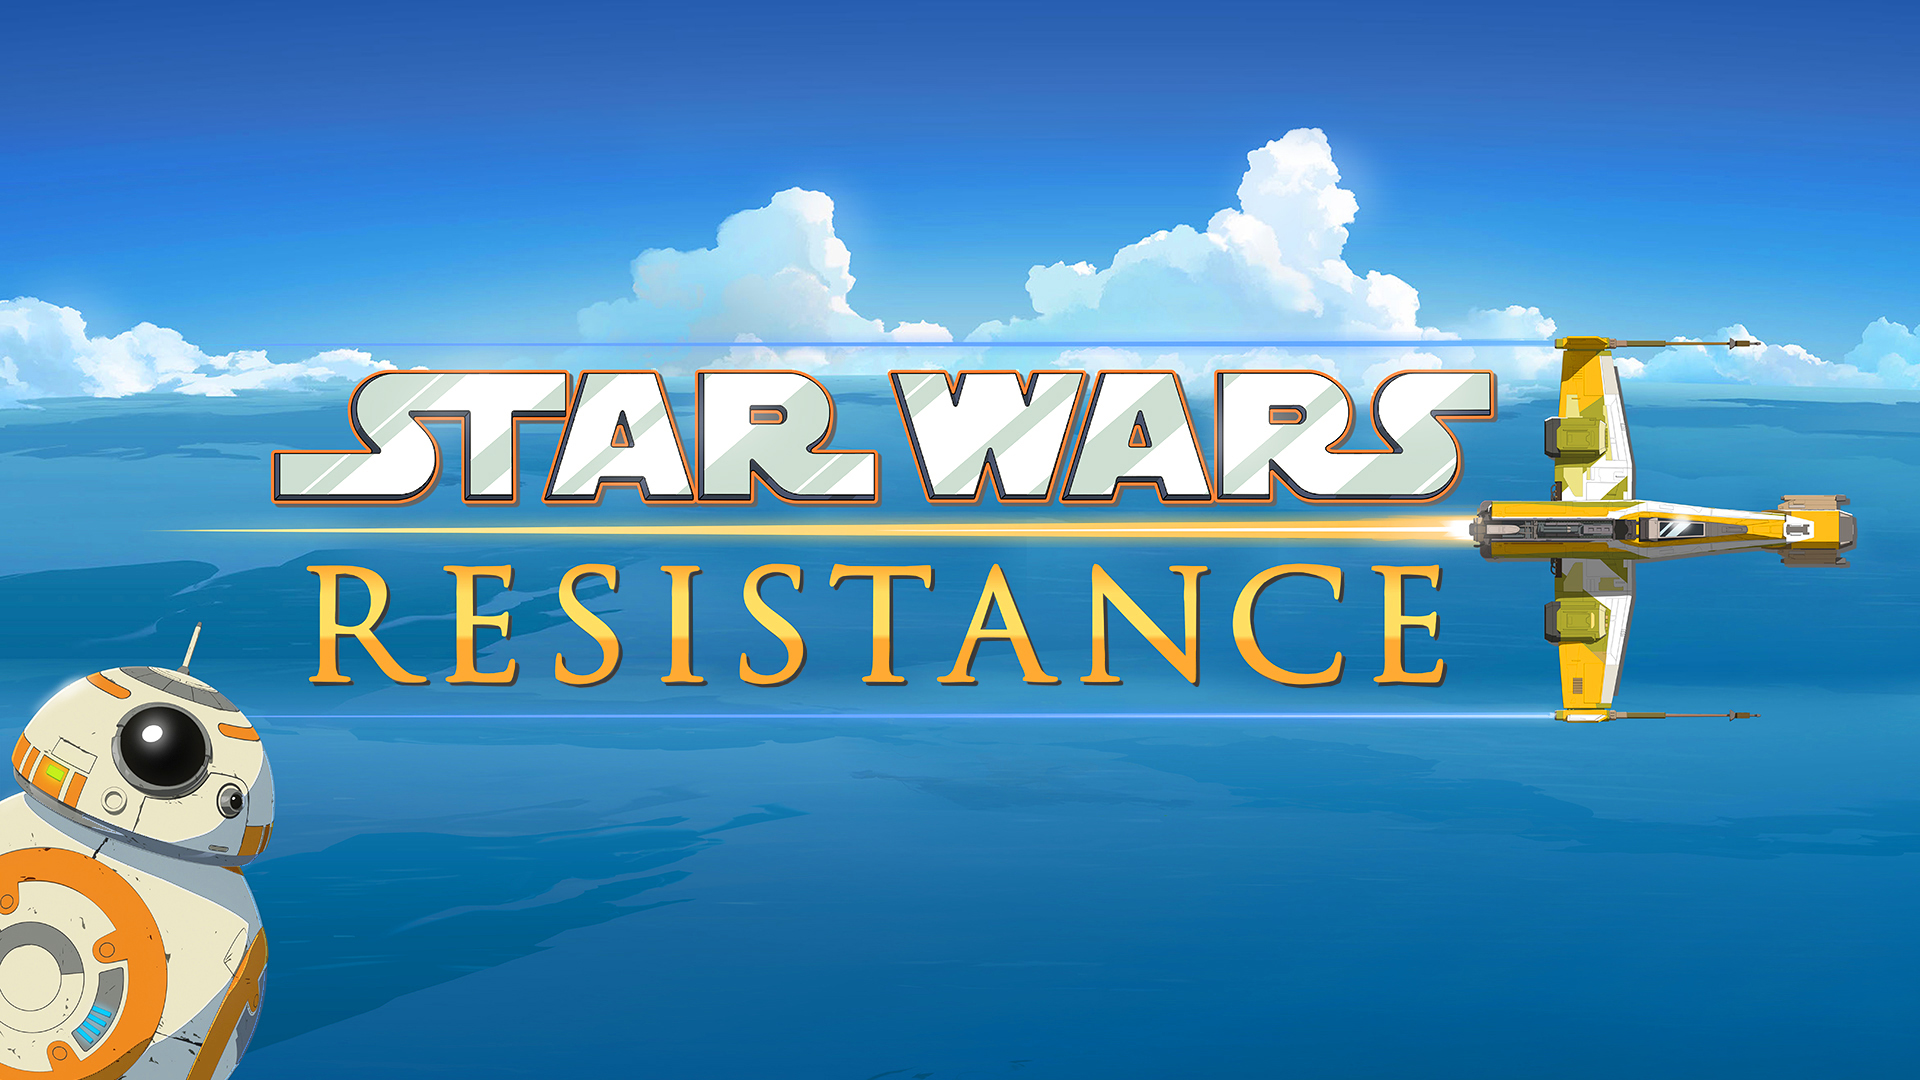 スター ウォーズ フォースの覚醒 以前の物語を描いたアニメシリーズ Star Wars Resistance 原題 の制作を発注